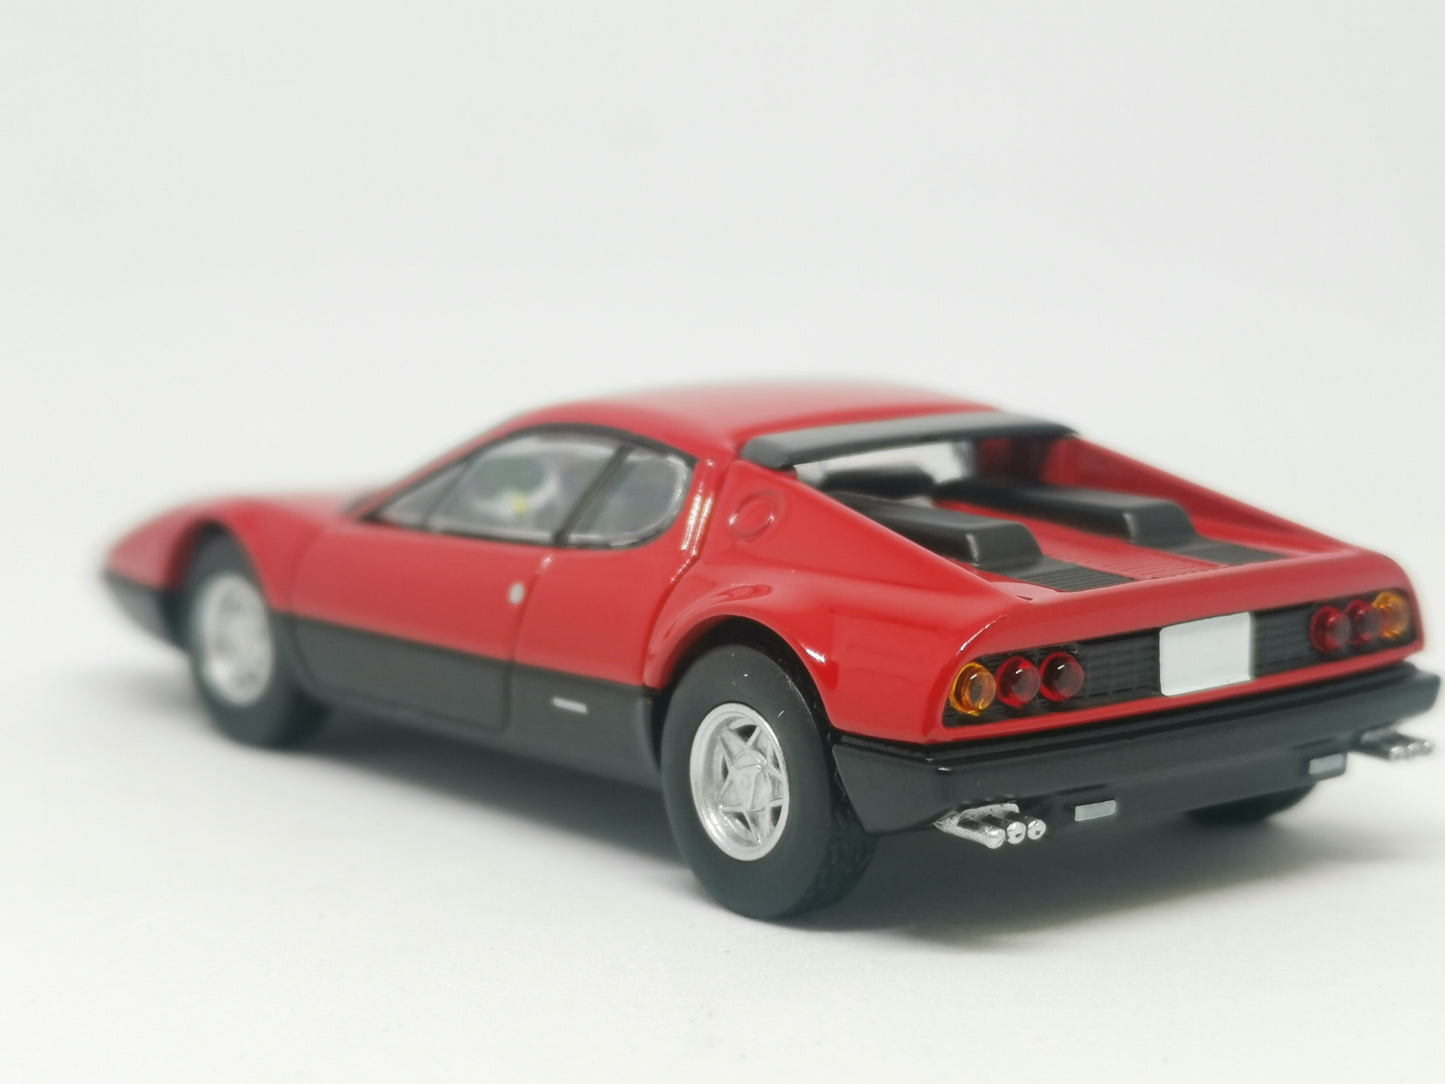 Tomica Limited Vintage Ferrari 365 GT4 BB (Red)